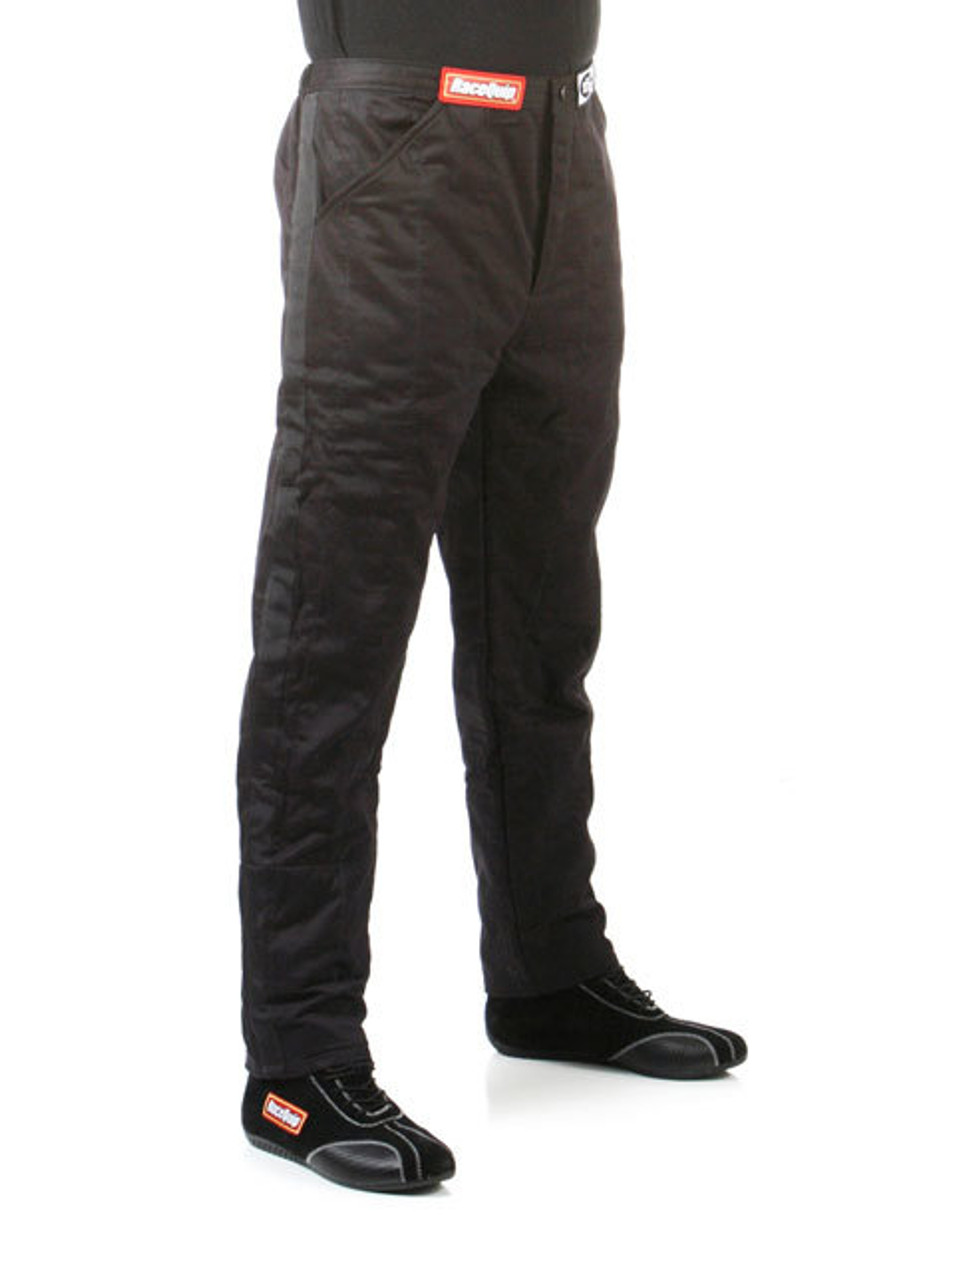 RaceQuip Black Pants Multi Layer Medium